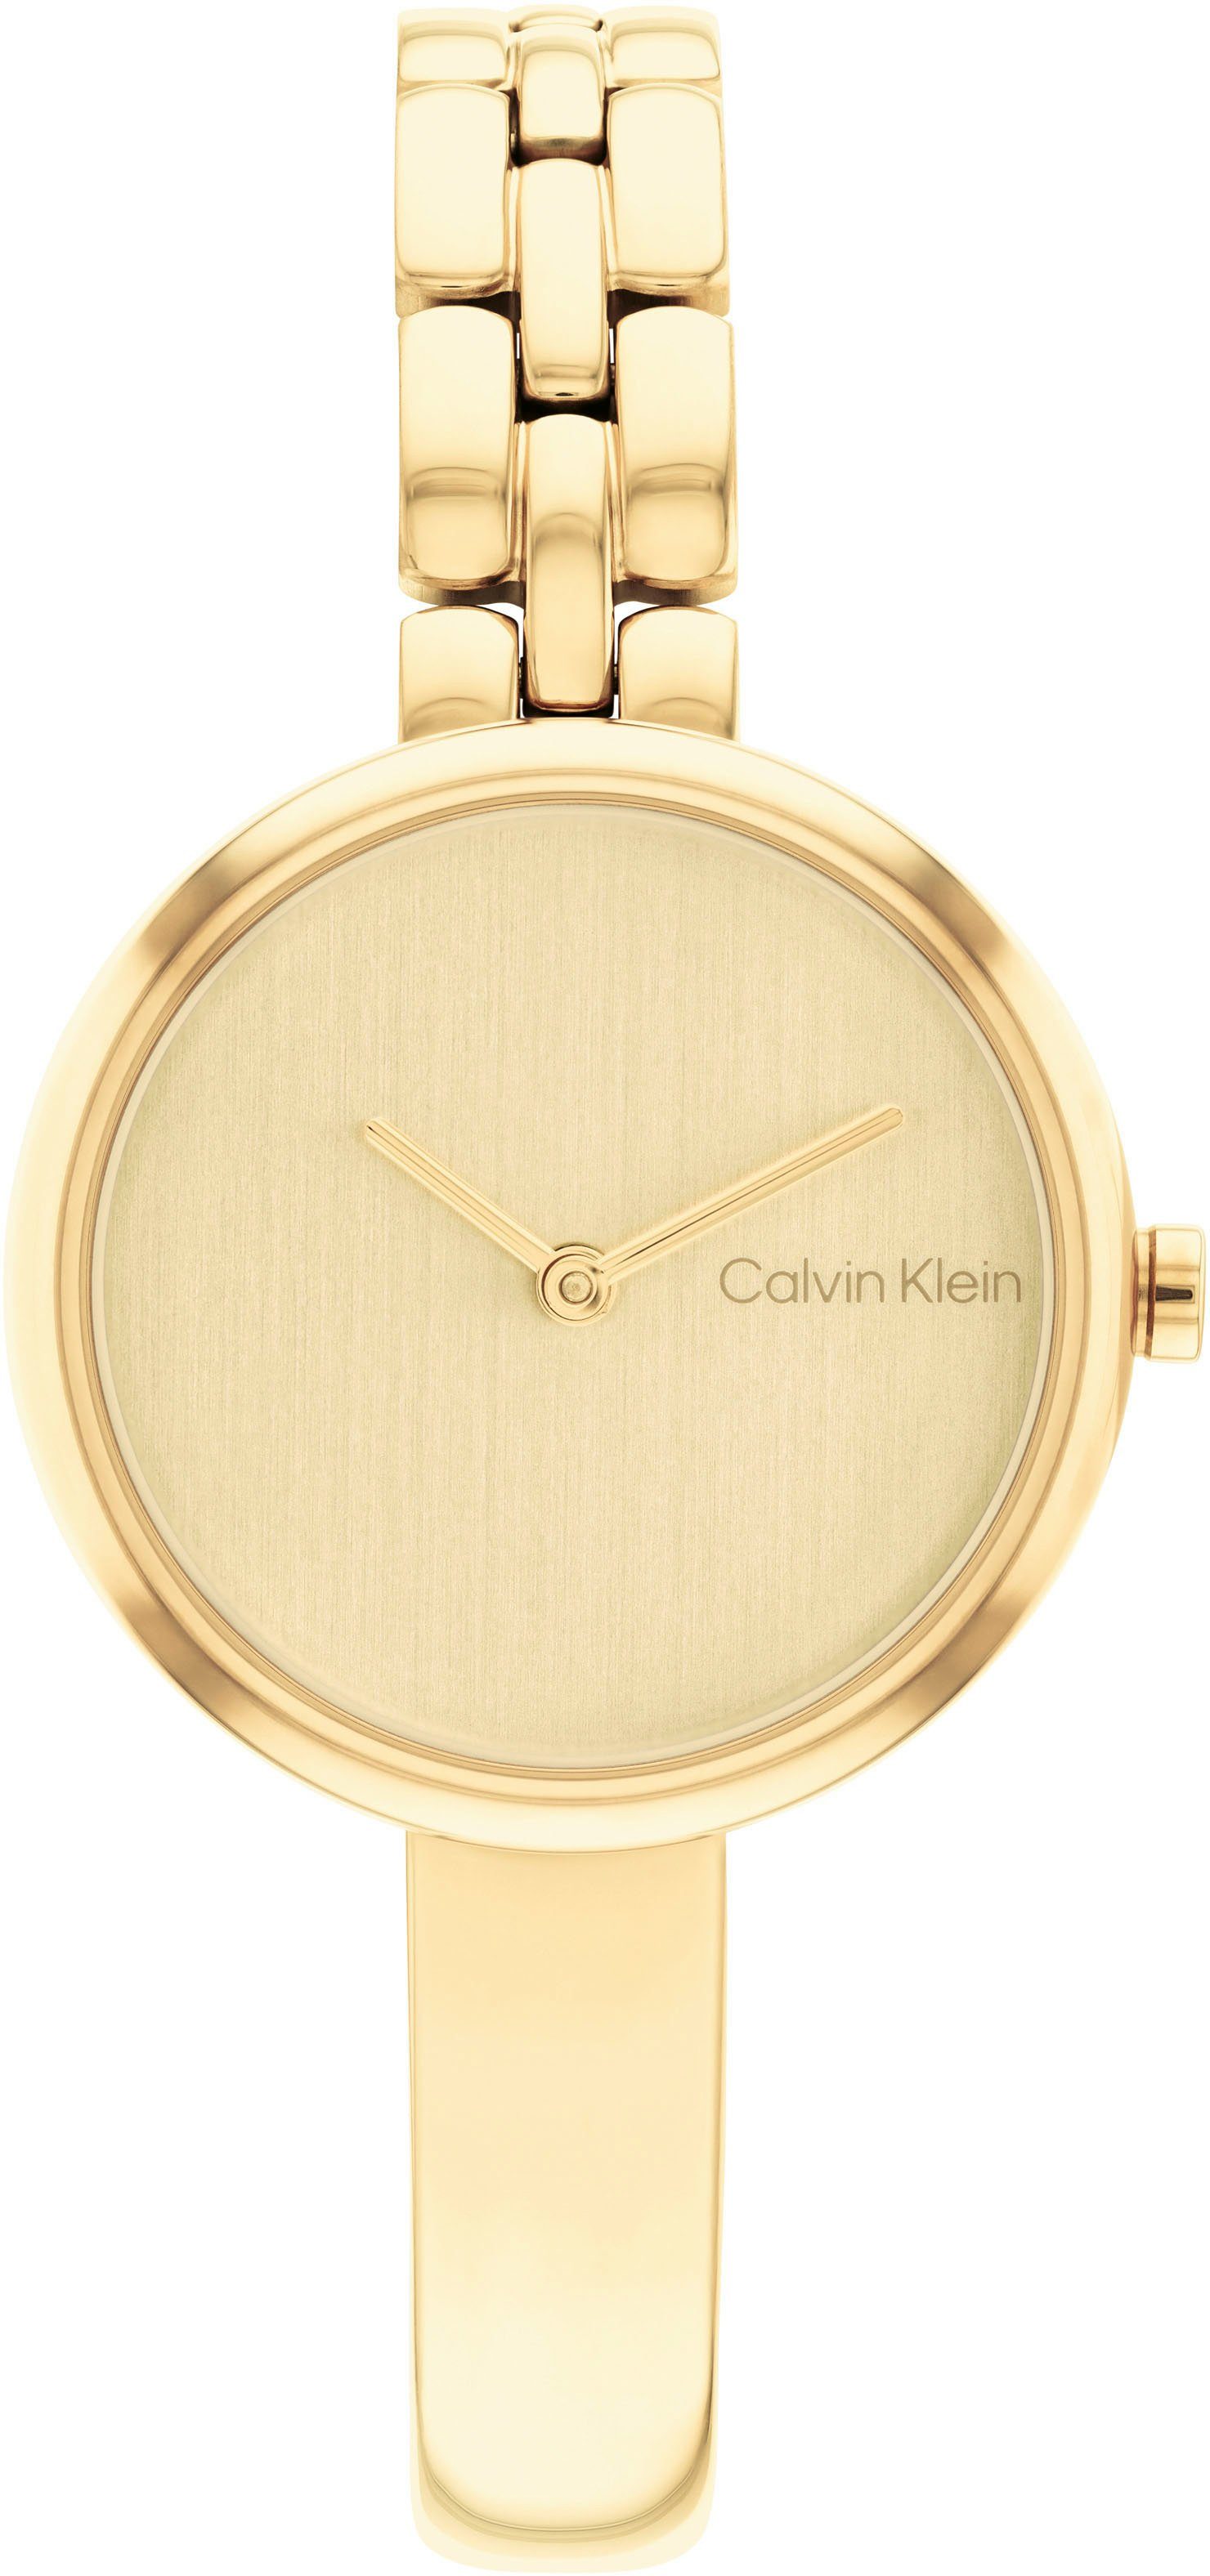 Calvin Klein Quarzuhr SCULPTURAL, 25200279, Armbanduhr, Damenuhr, Mineralglas, IP-Beschichtung